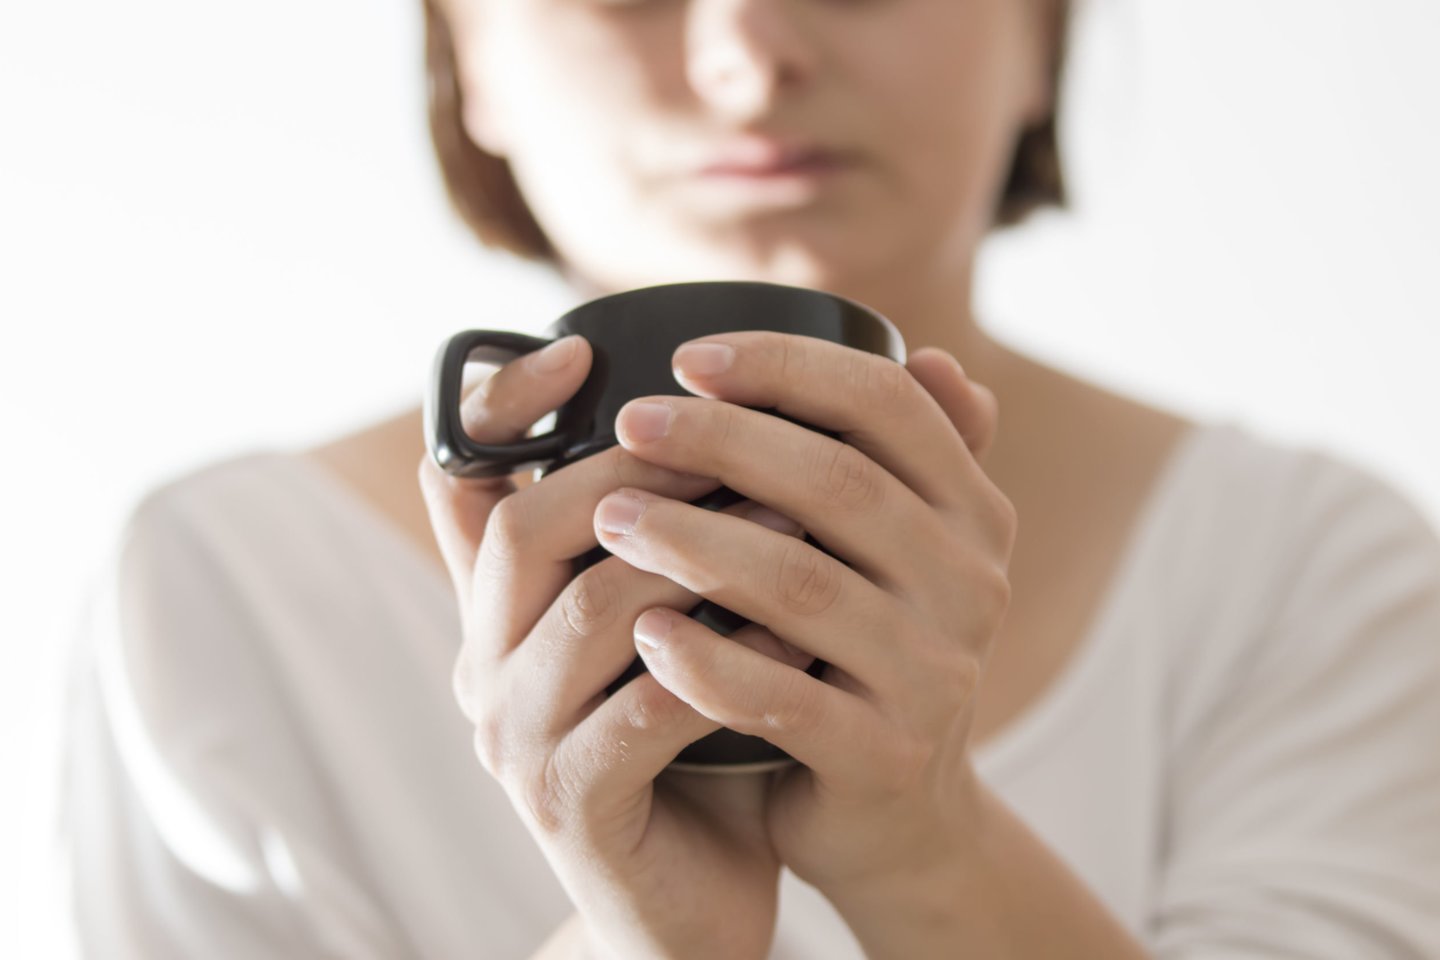  Vyresnio amžiaus žmonės yra jautresni kofeinui, taip pat pastebėta, kad moterys kofeinui jautresnės nei vyrai.<br> 123rf nuotr.